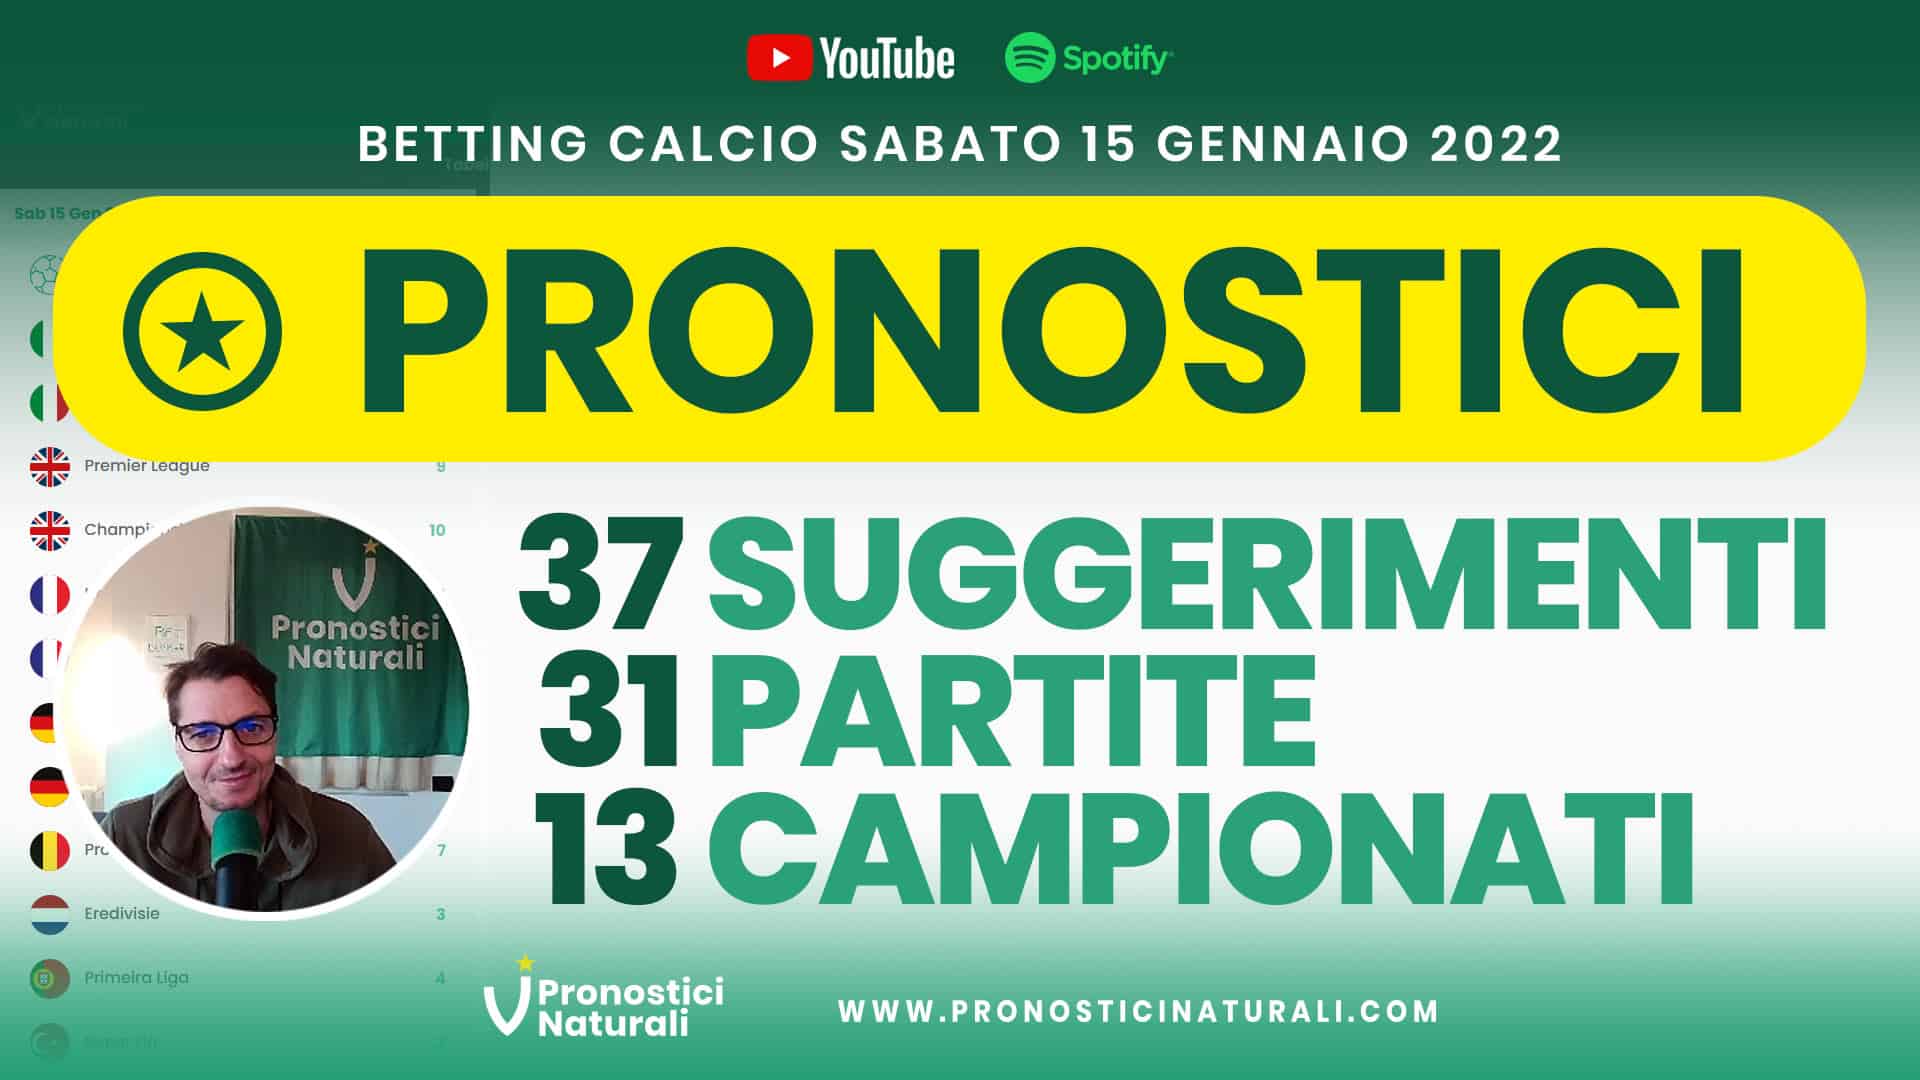 Pronostici Naturali Video Analisi Scommesse Betting Calcio Analisi Pre Partite Sabato 15 Gennaio 2022